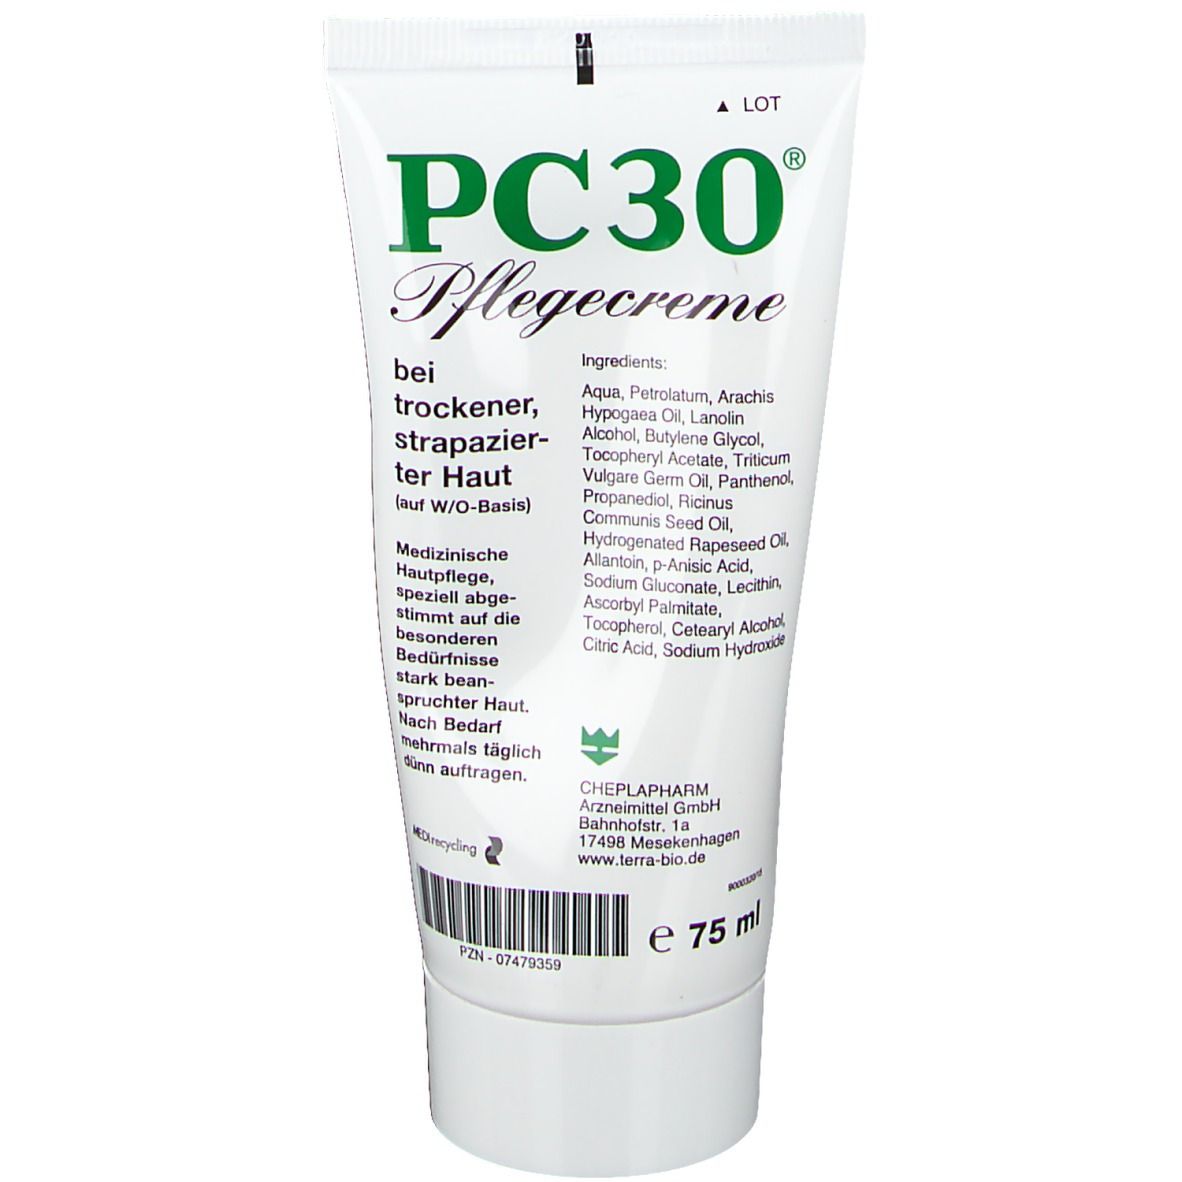 PC 30® Pflegecreme